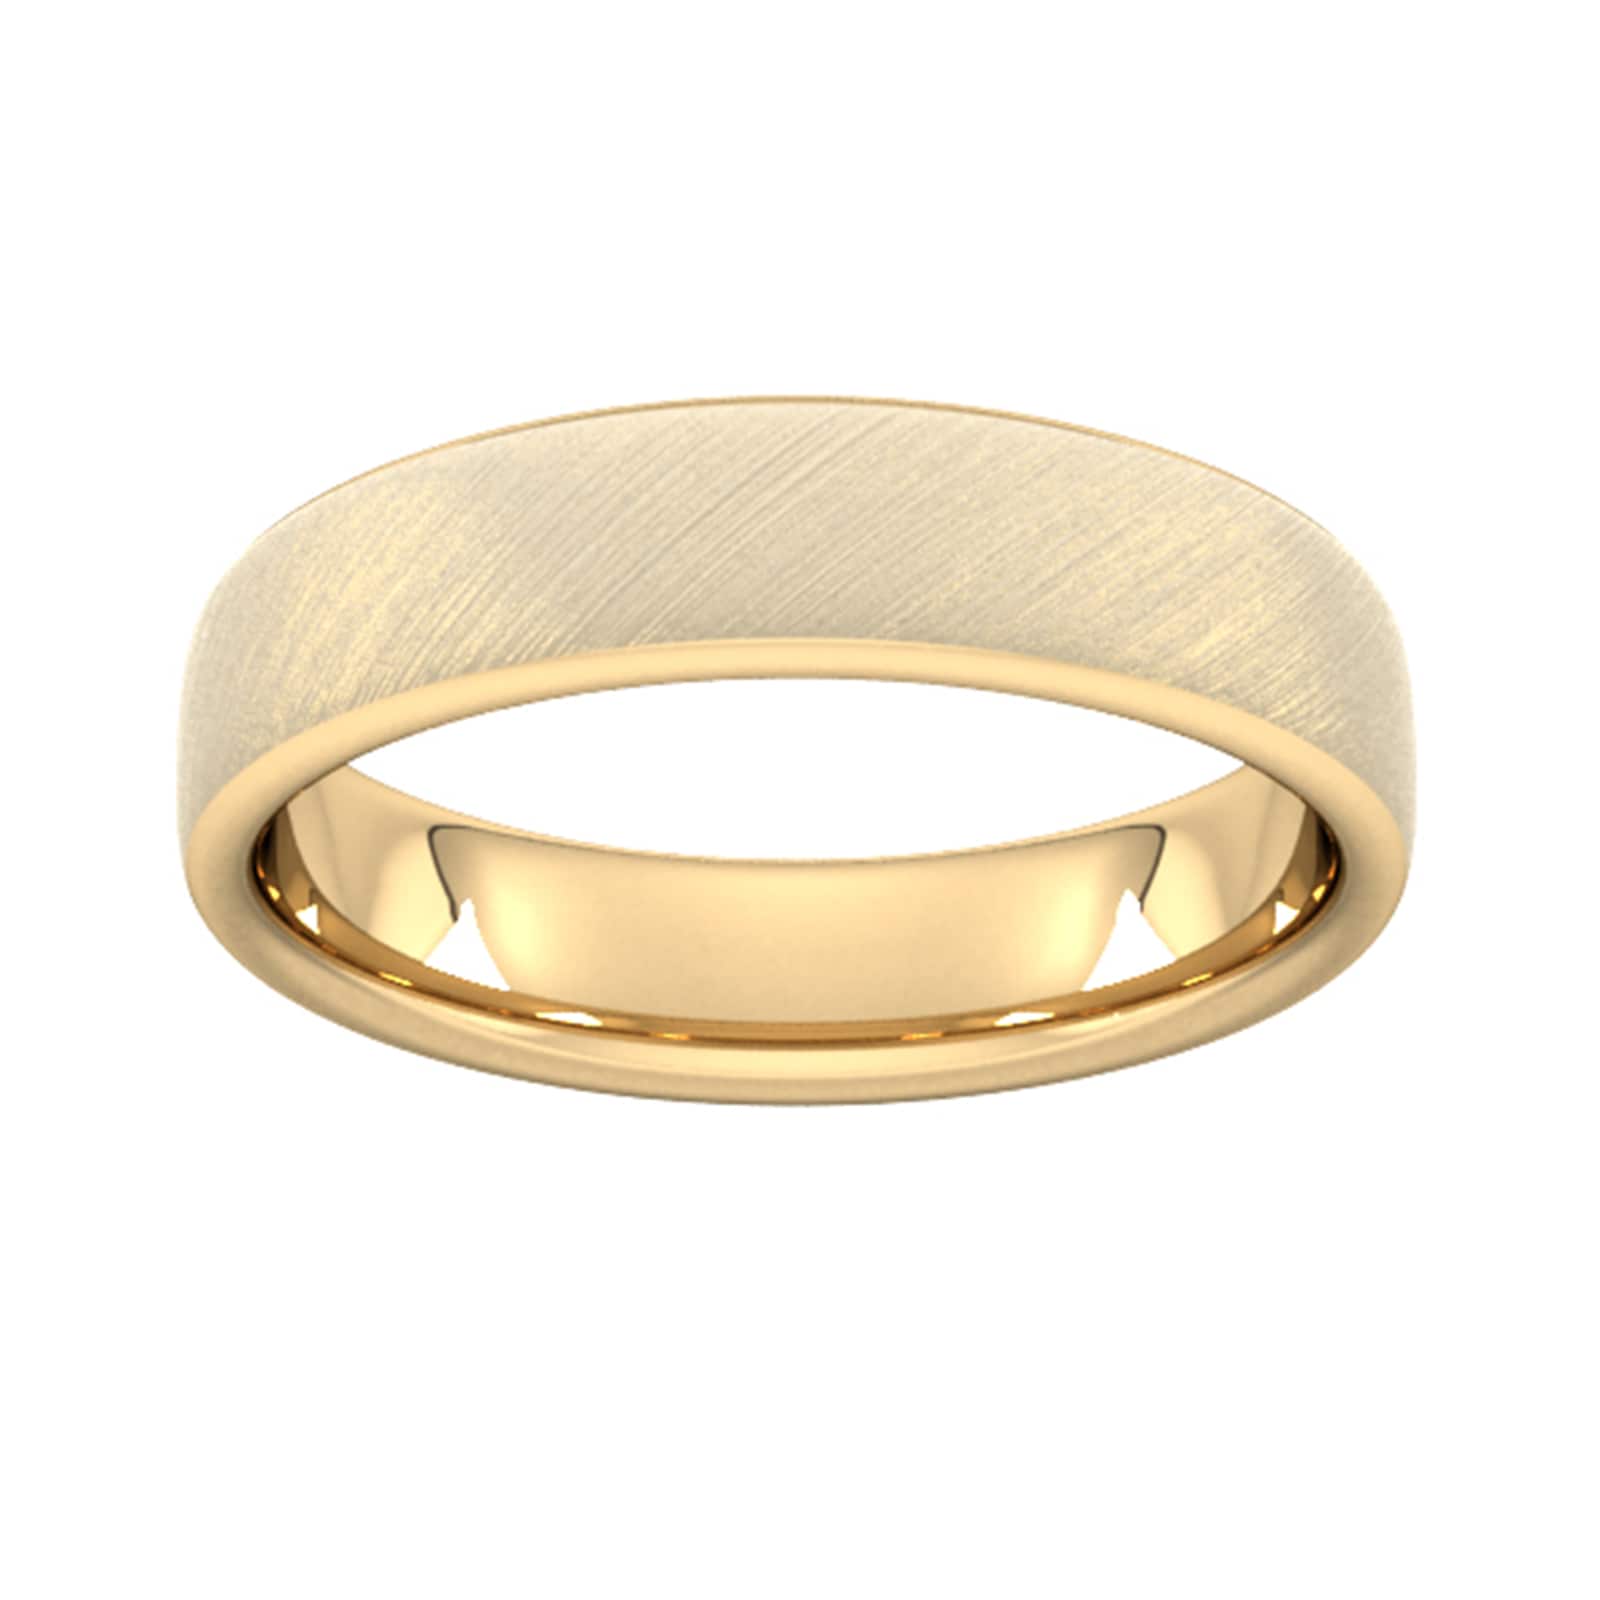 5mm Slight Court Heavy Diagonal Matt Finish Wedding Ring In 18 Carat Yellow Gold - Ring Size O